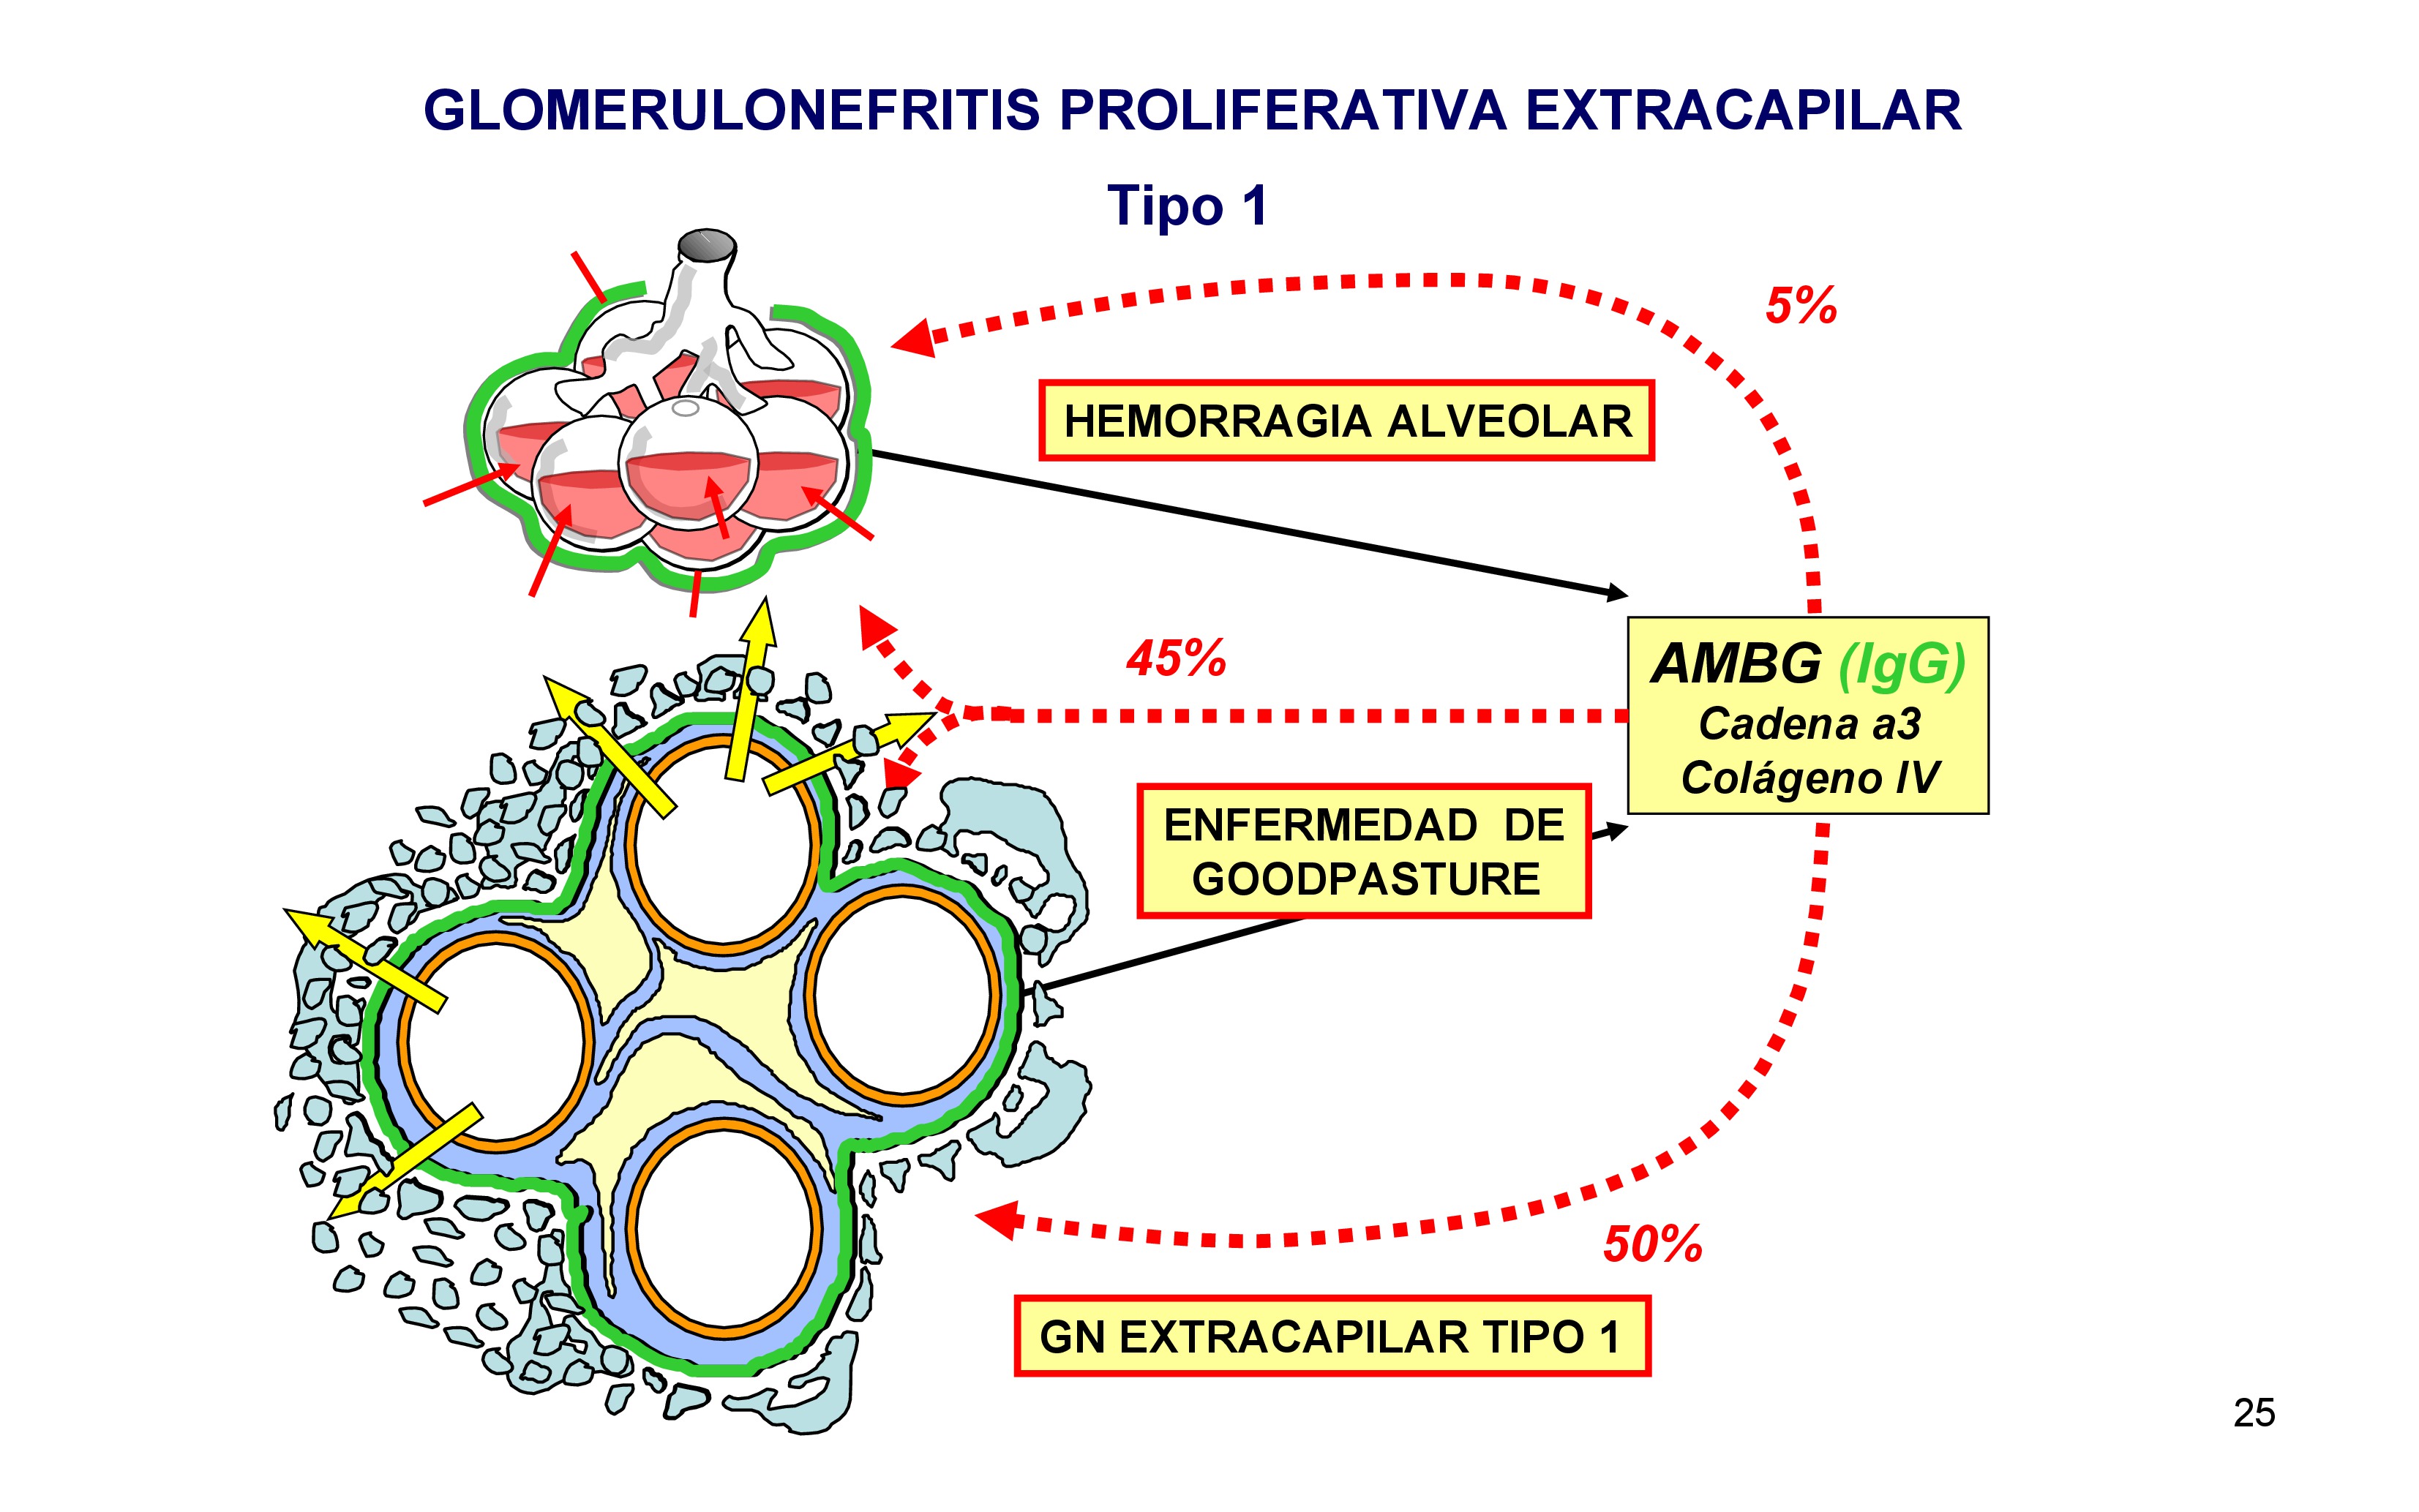 La glomerulonefritis proliferativa extracapilar se produce por anticuerpos antimembrana basal glomerular. La membrana basal glomerular tiene en su composición cadena alfa-3 de colágeno tipo IV. Algunas personas desarrollan anticuerpos frente a esta cadena de colageno y se depositan en esta membrana, estos anticuerpos son IgG.
Cuando se depositan pueden romper la membrana basal glomerular, sale el plasma de las asas capilares y se produce una proliferación de células epiteliales en el espacio extracapilar formando las típicas semilunas. 
La membrana que rodea los sacos alveolares tiene la misma composición que la membrana basal glomerular, por lo que estos anticuerpos se pueden tambier depositar en esta membrana, rompiéndola y entrando sangre al saco alveolar produciendo una hemorragia alveolar.
En el 50% los anticuerpos solo se depositan en el glomérulo, en el 5% solo en pulmón y en el 45% en riñón y pulmón dando lugar a la enfermedad de Goodpasture. 